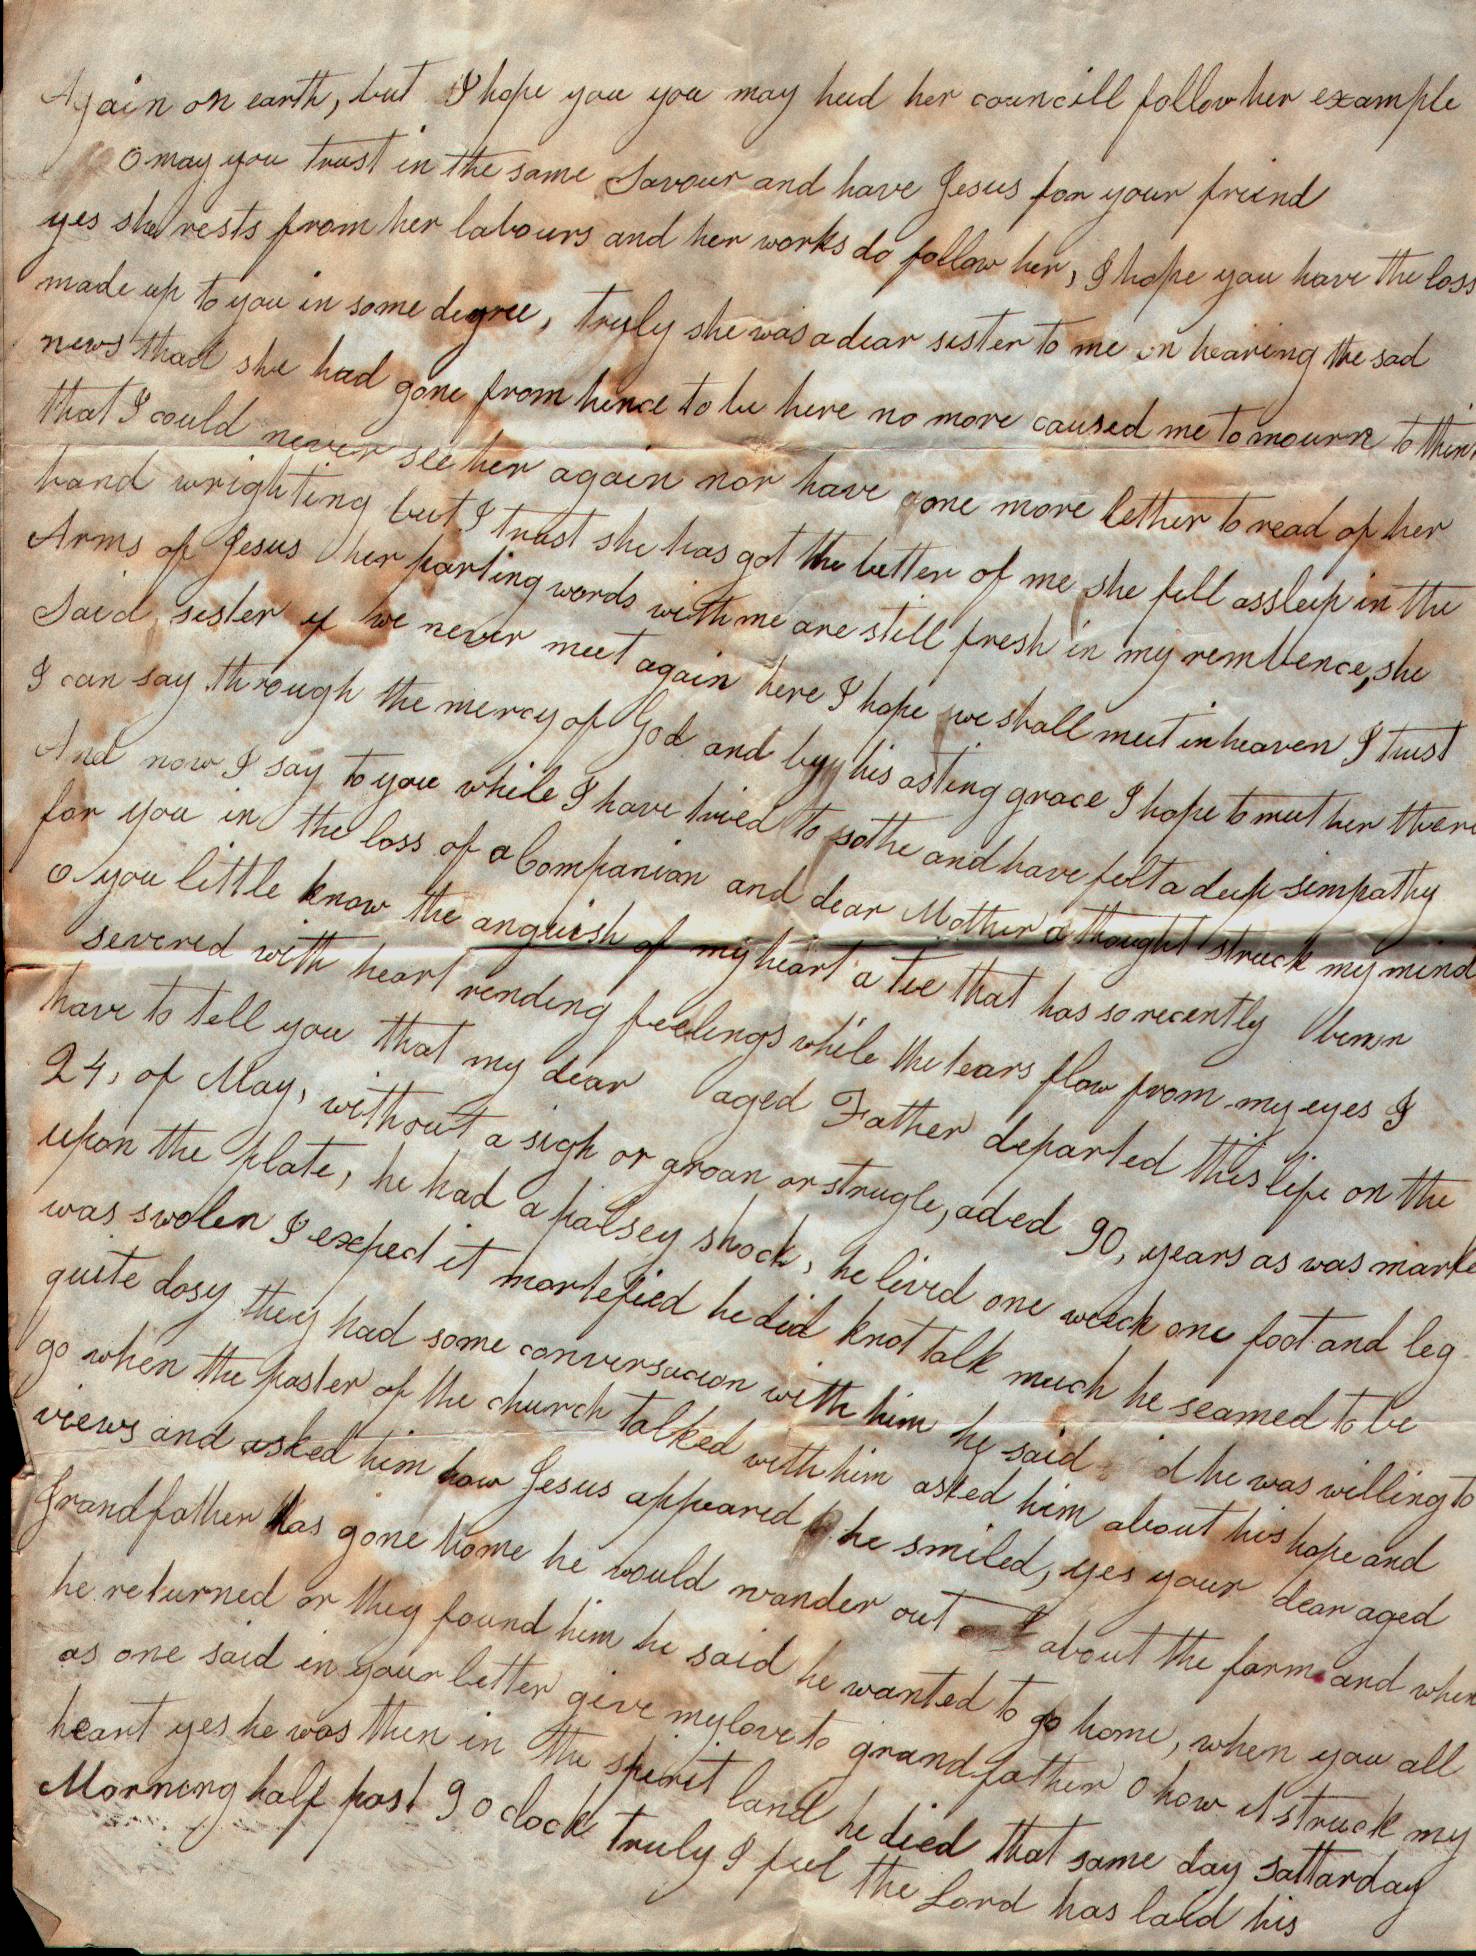 1851 Letter from Lydia (Stanton) Spicer - PG 2